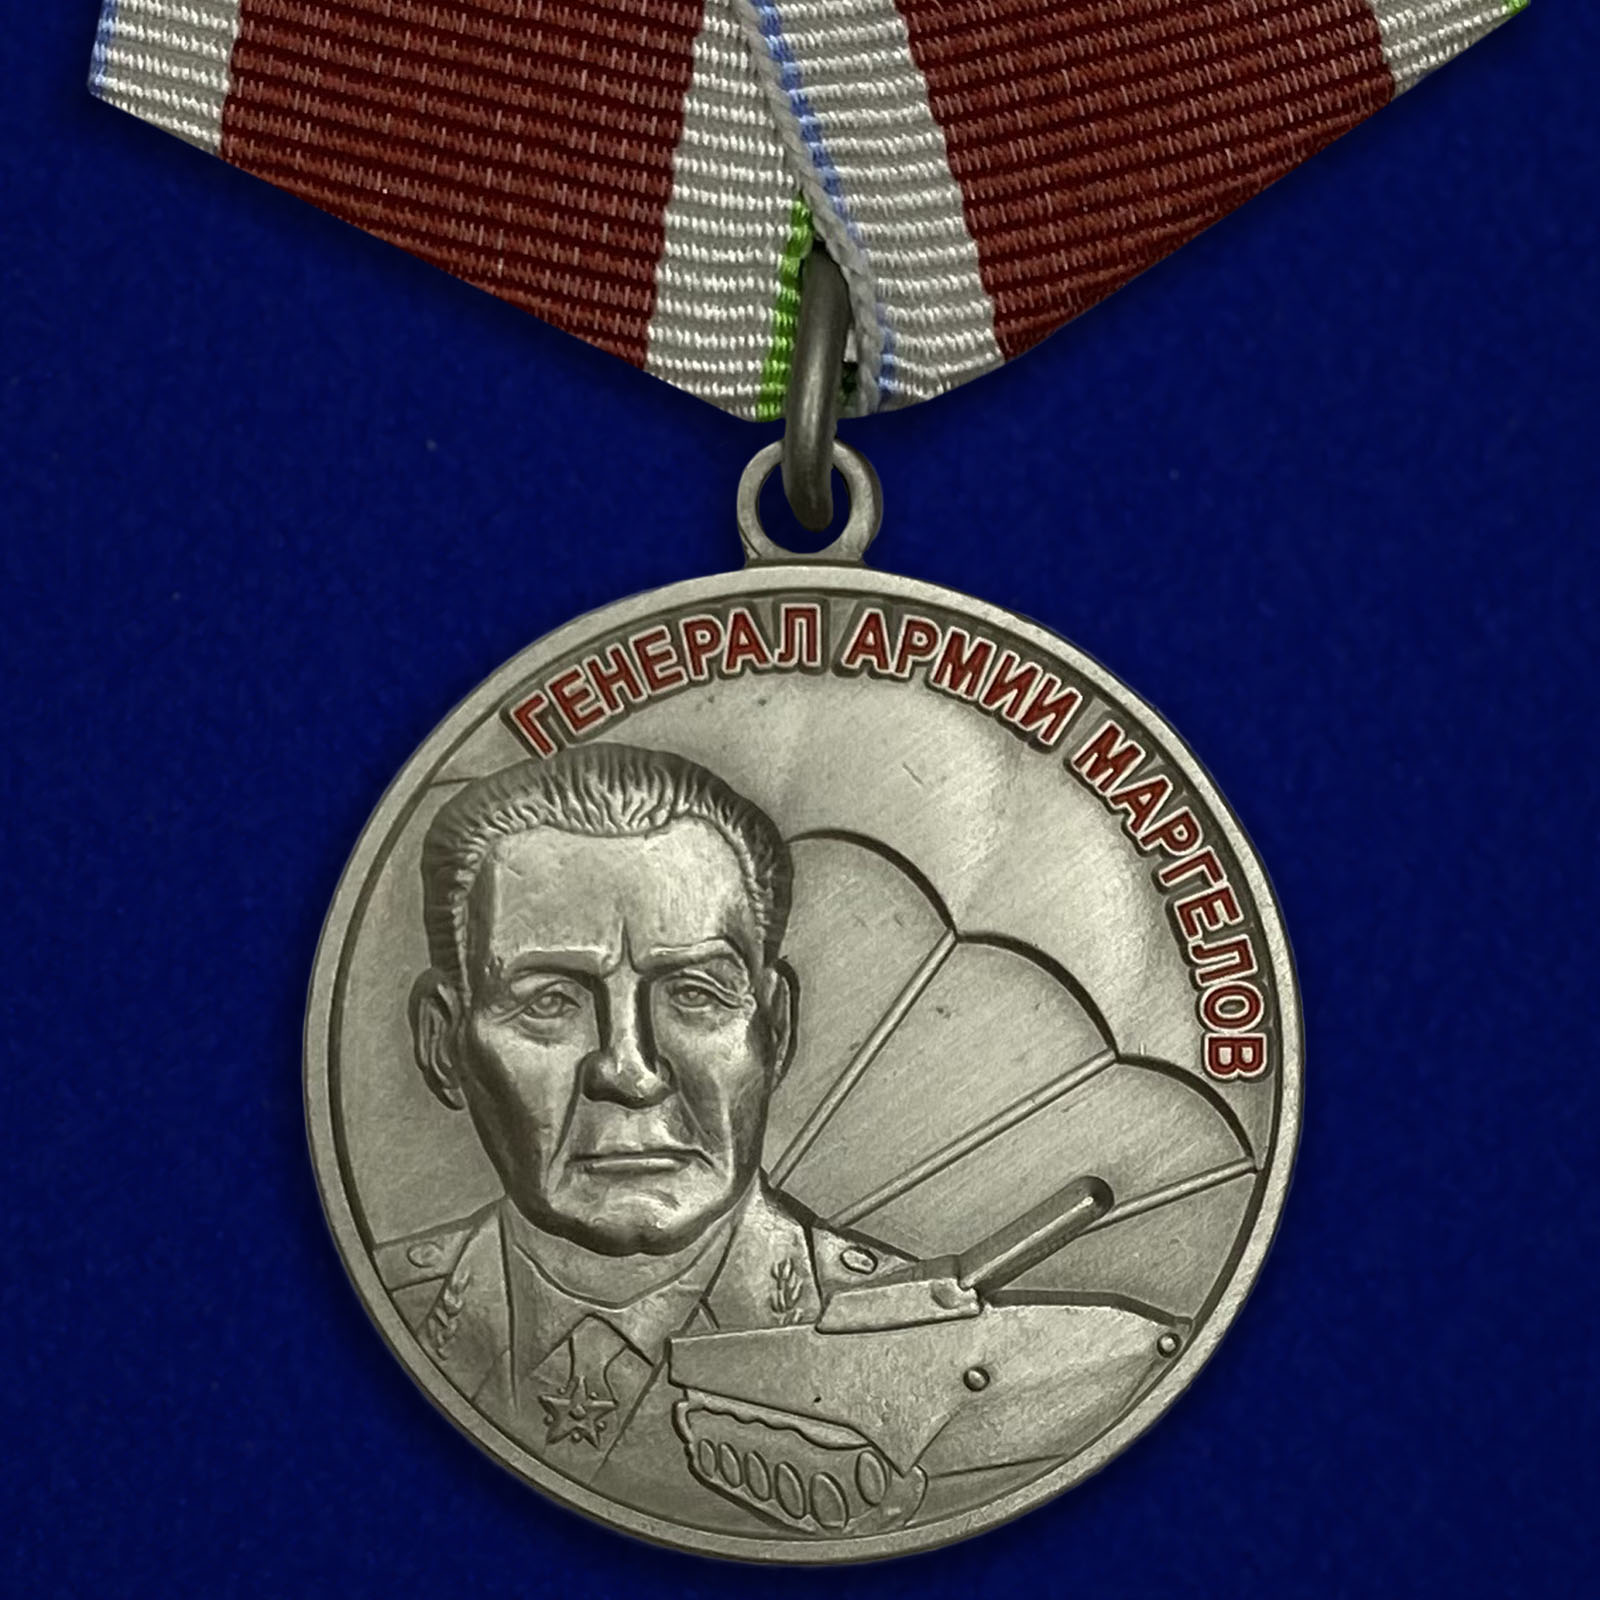 Купить медаль Маргелова на подставке онлайн выгодно